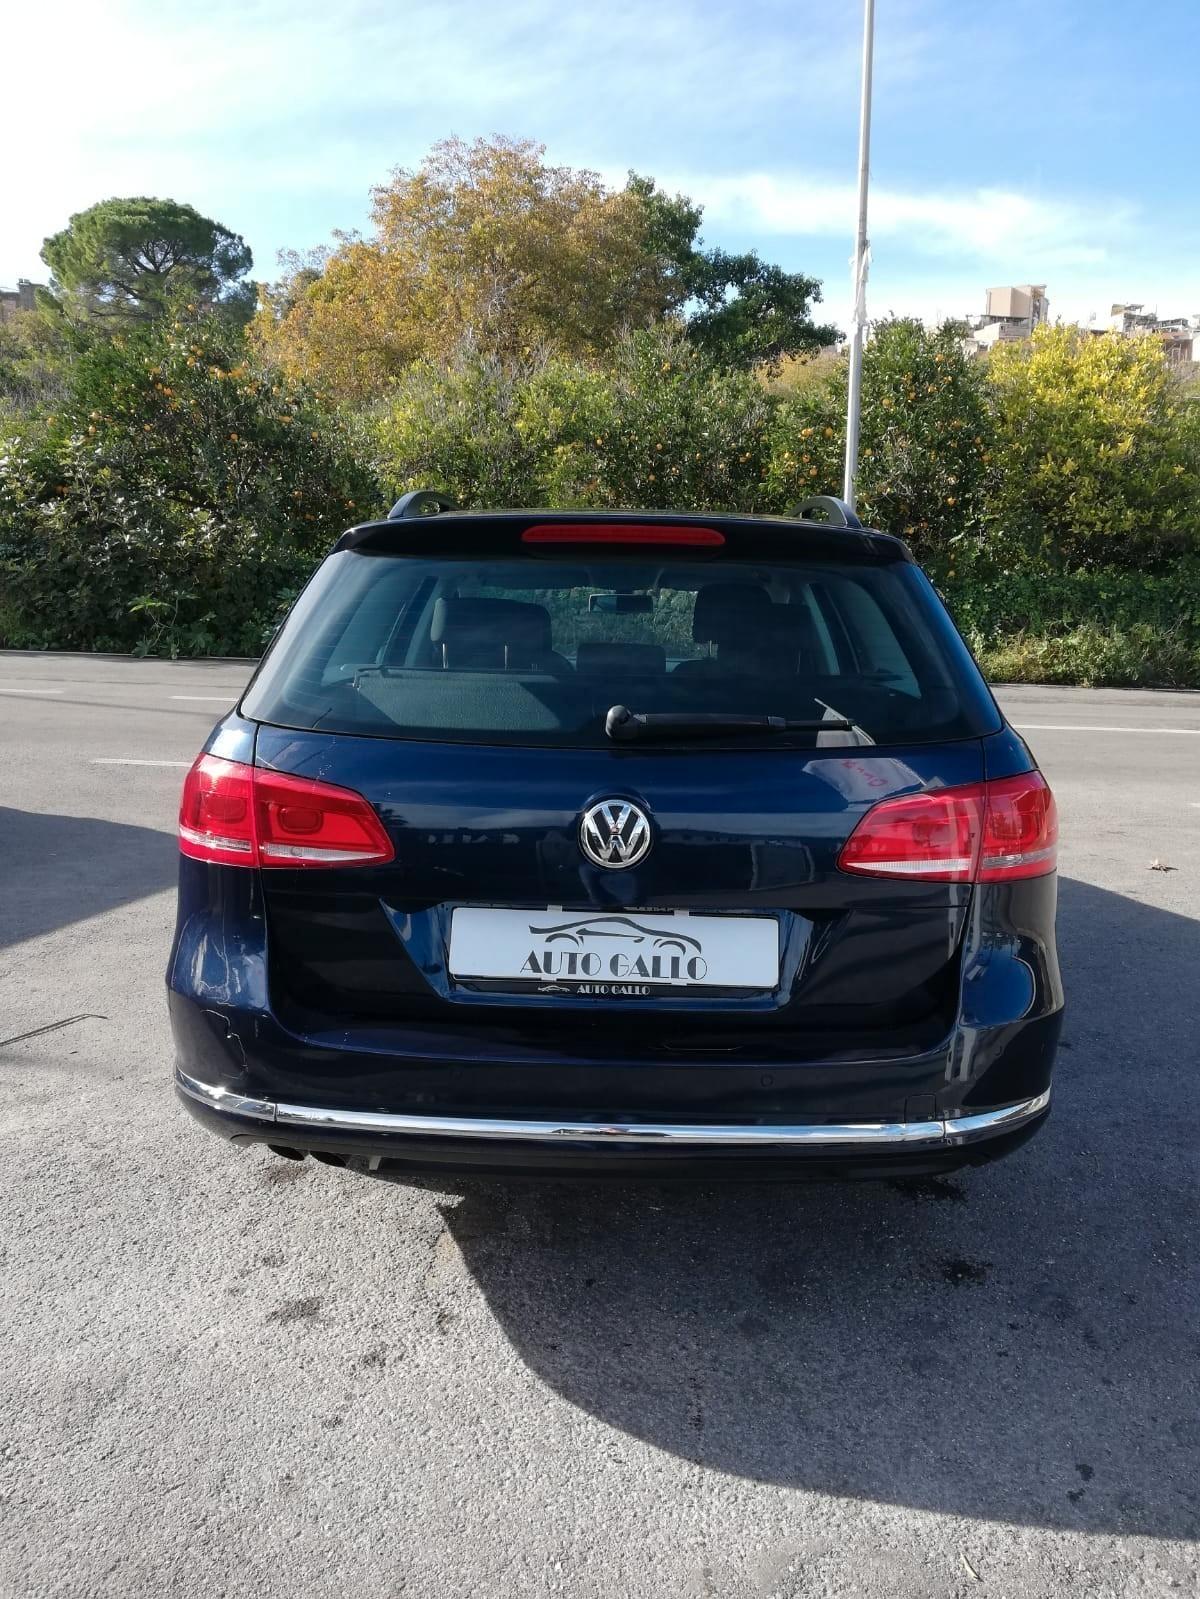 Volkswagen Passat Var. 2.0 TDI DSG High. BM.Tech. AUTO GALLO Francofonte